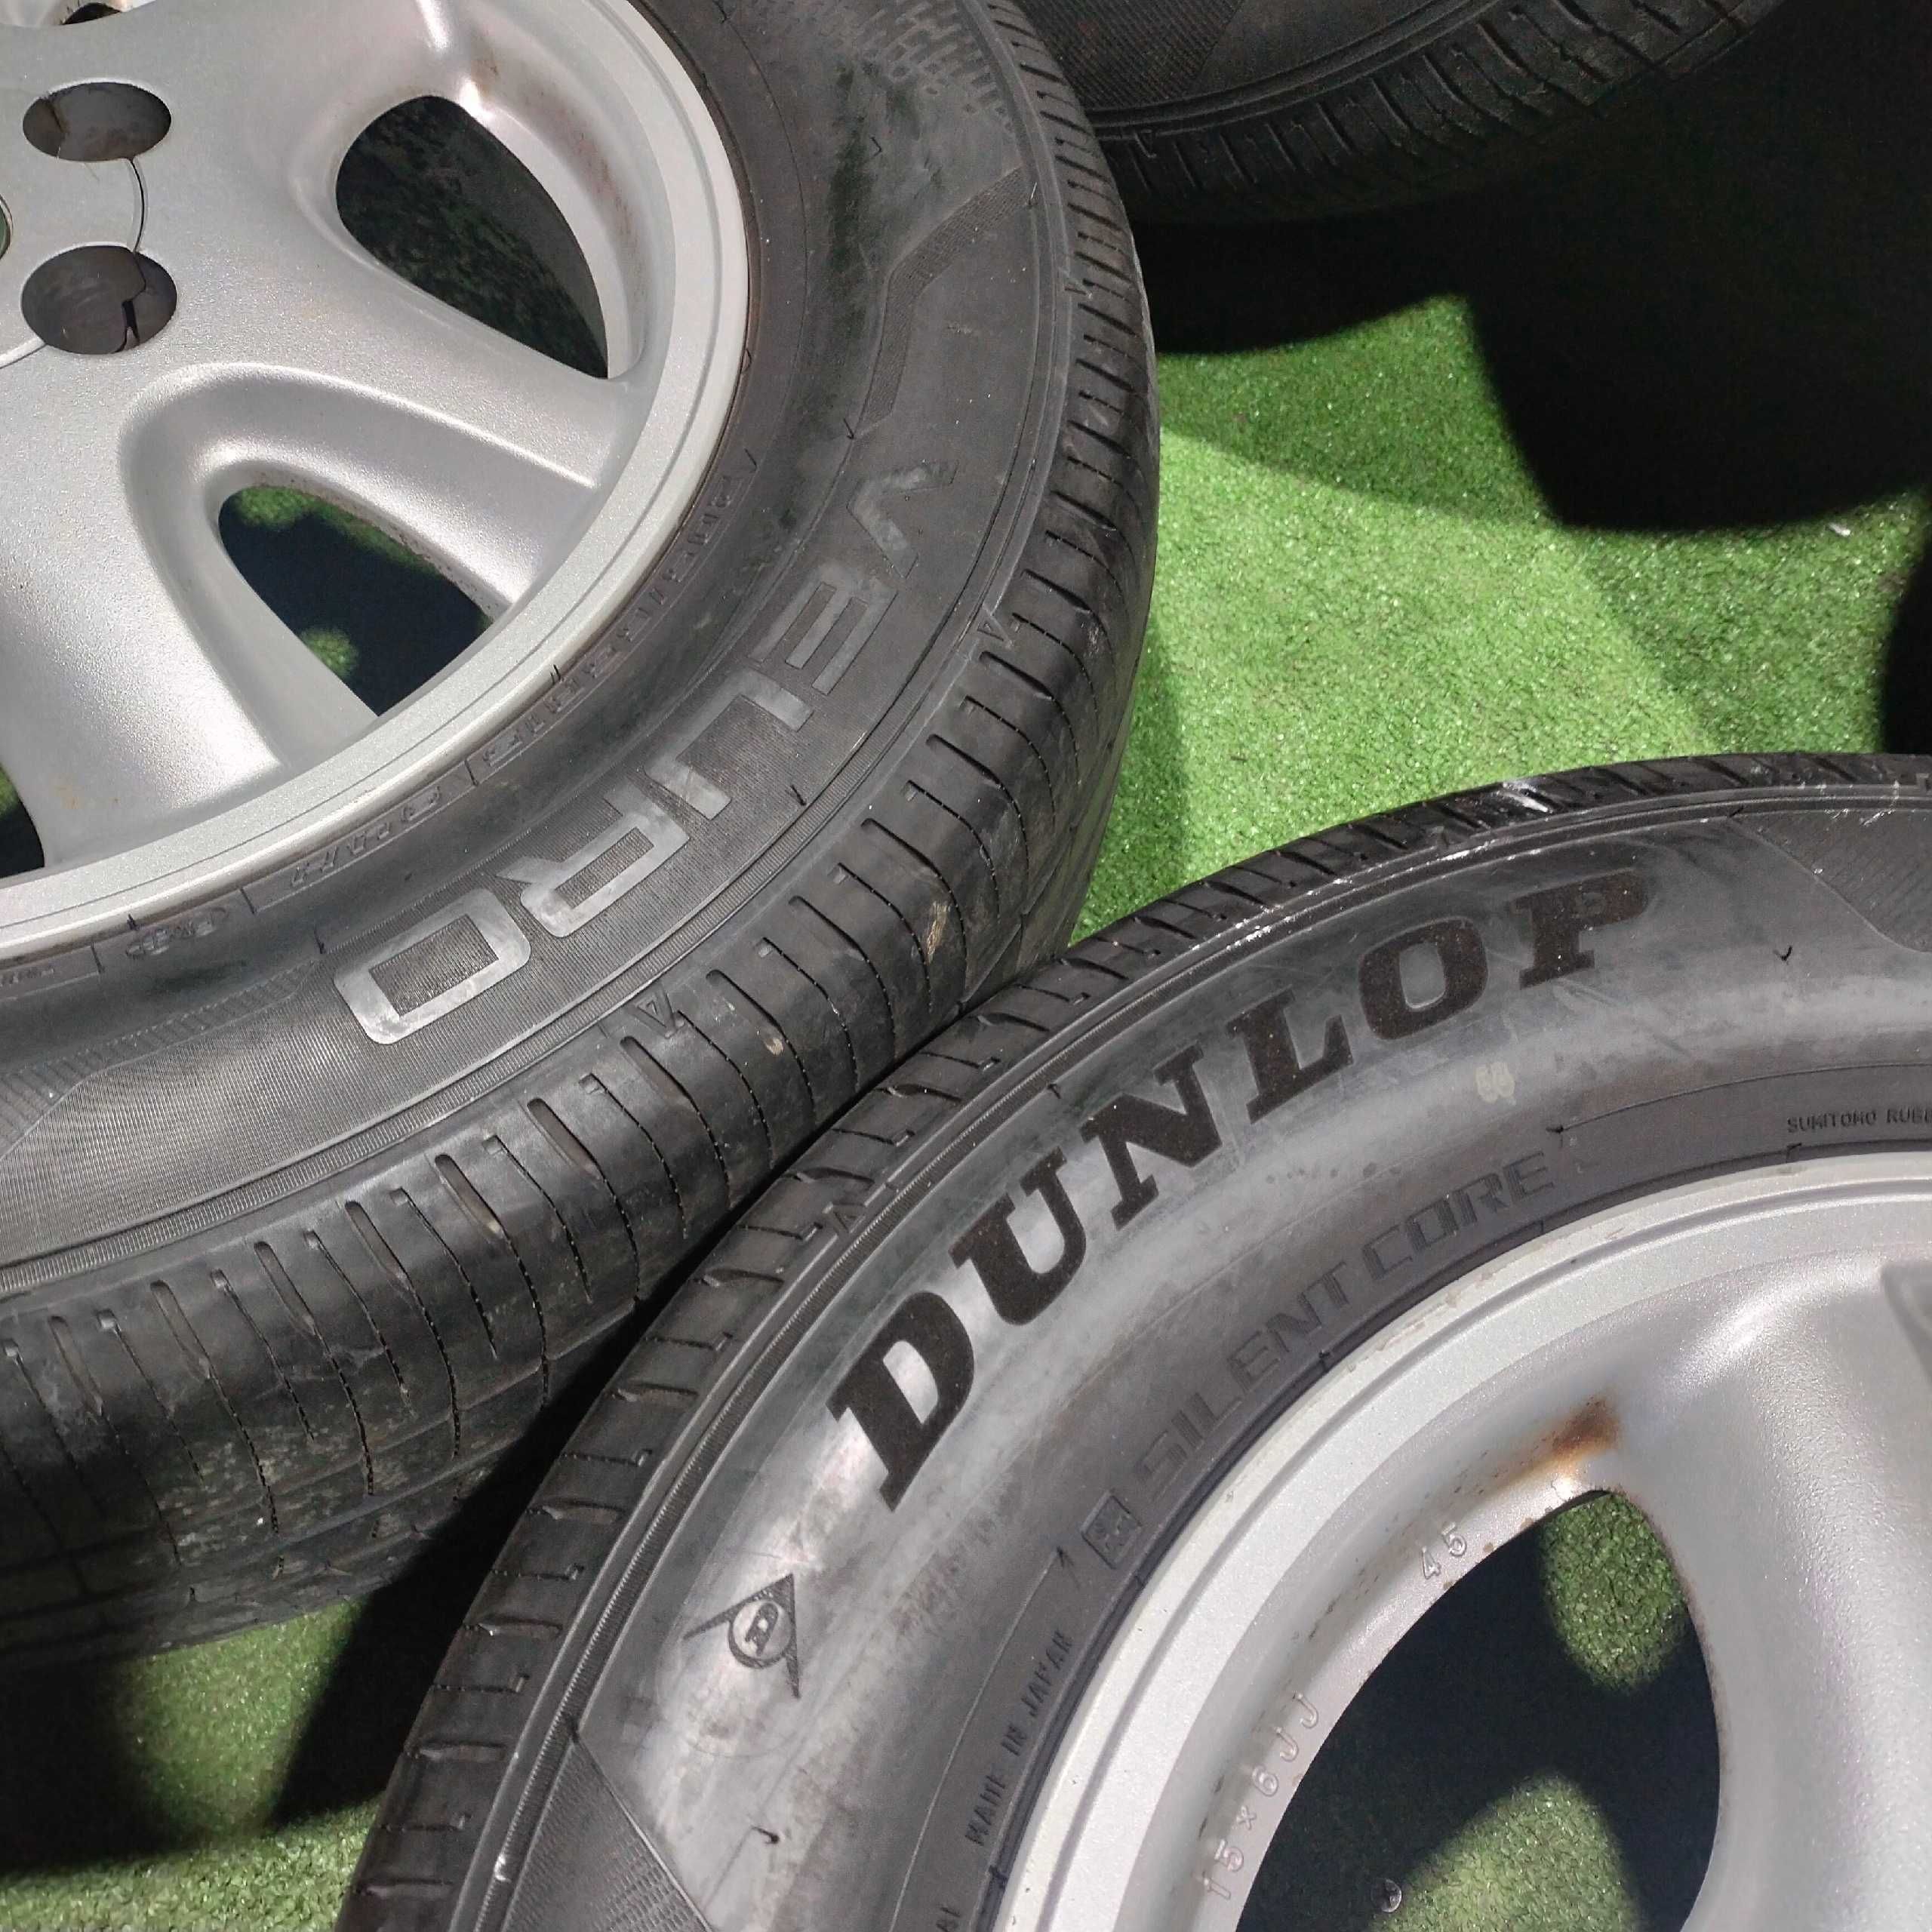 Продам Диск оригинал Toyota с шинами Dunlop 205/65 R15 летний